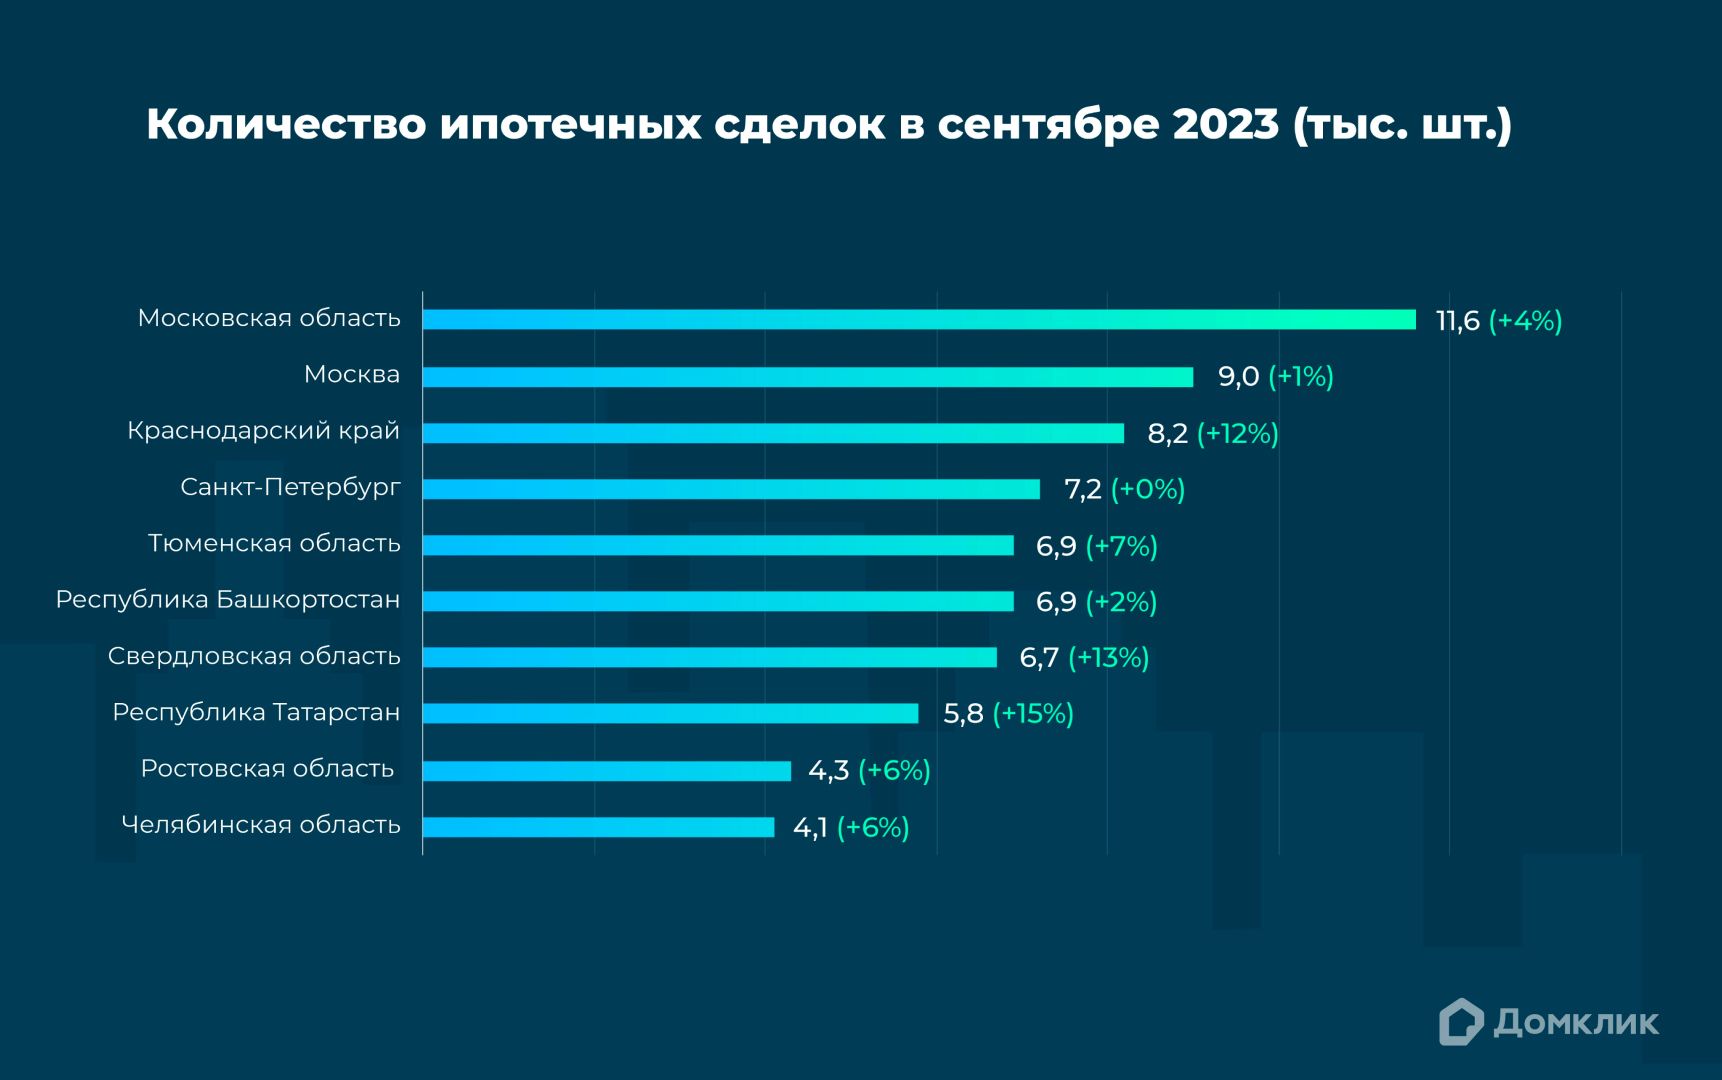 Топ-10 регионов РФ по количеству выдач ипотеки в сентябре 2023. Процентный прирост по отношению к августу 2023 для каждого региона показан в скобках